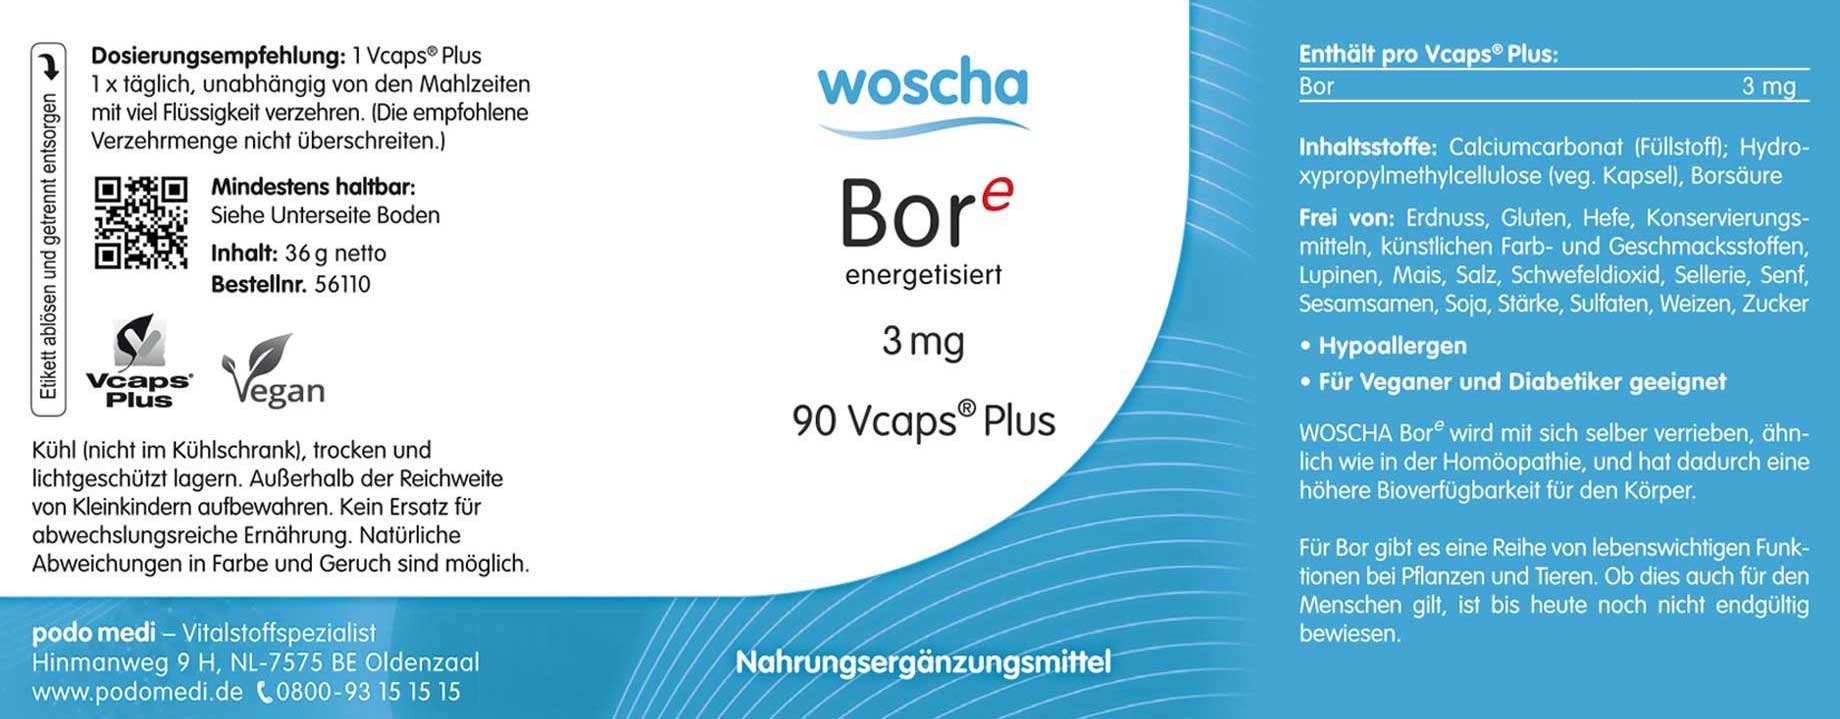 Woscha Bor energetisiert von podo medi beinhaltet 90 Kapseln Etikett